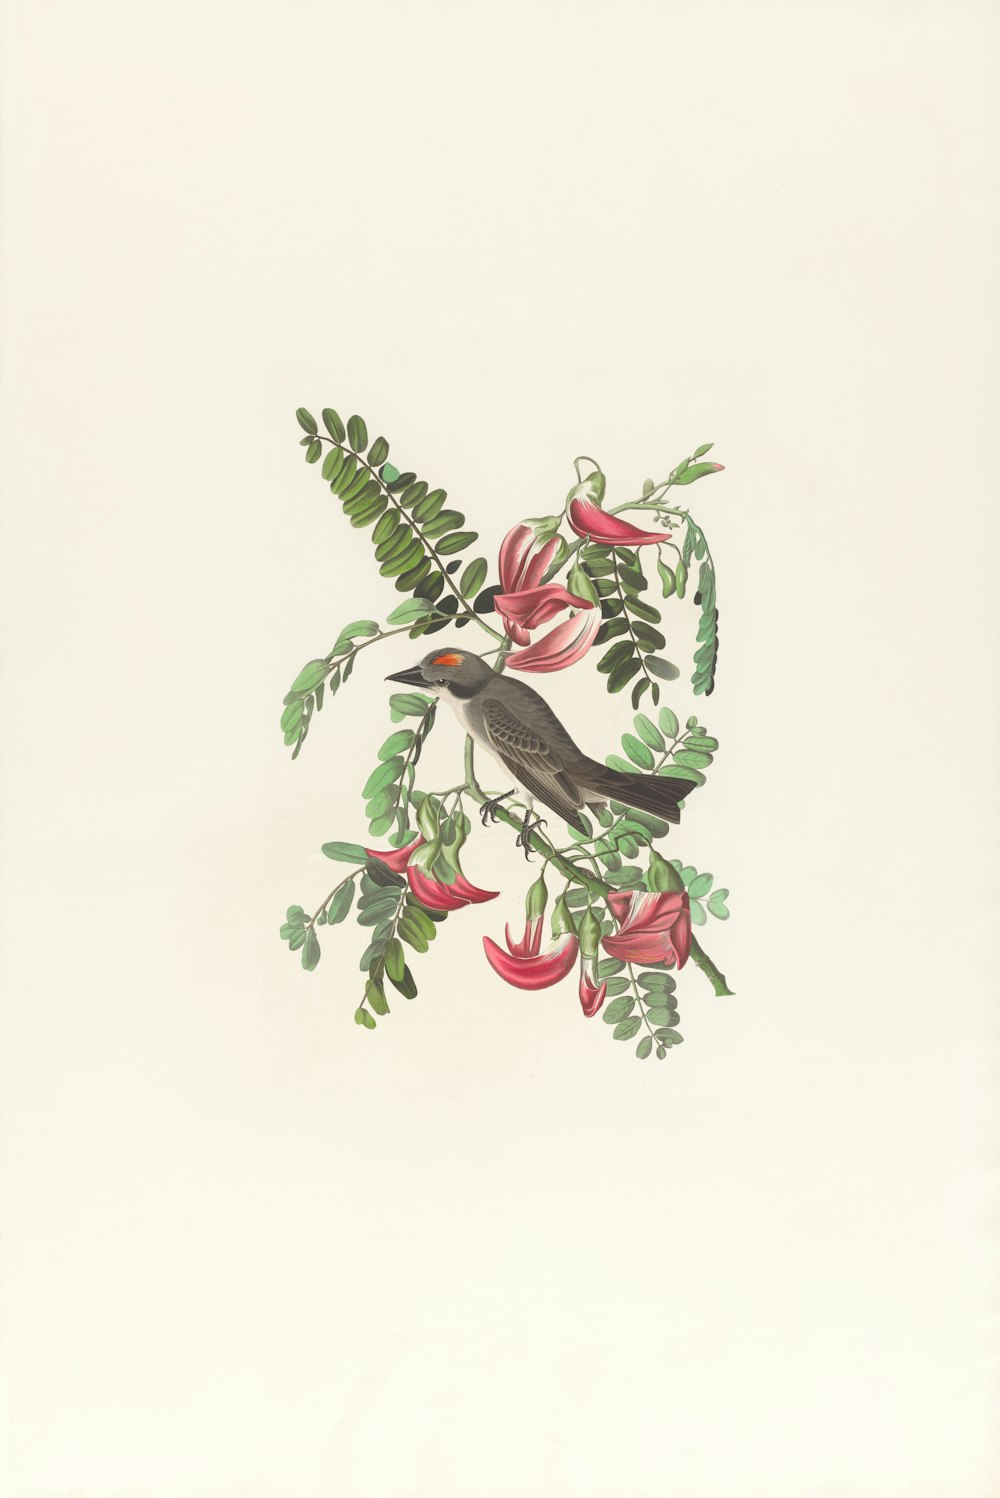 eine Zeichnung eines Vogels, der auf einem Zweig mit Blumen sitzt